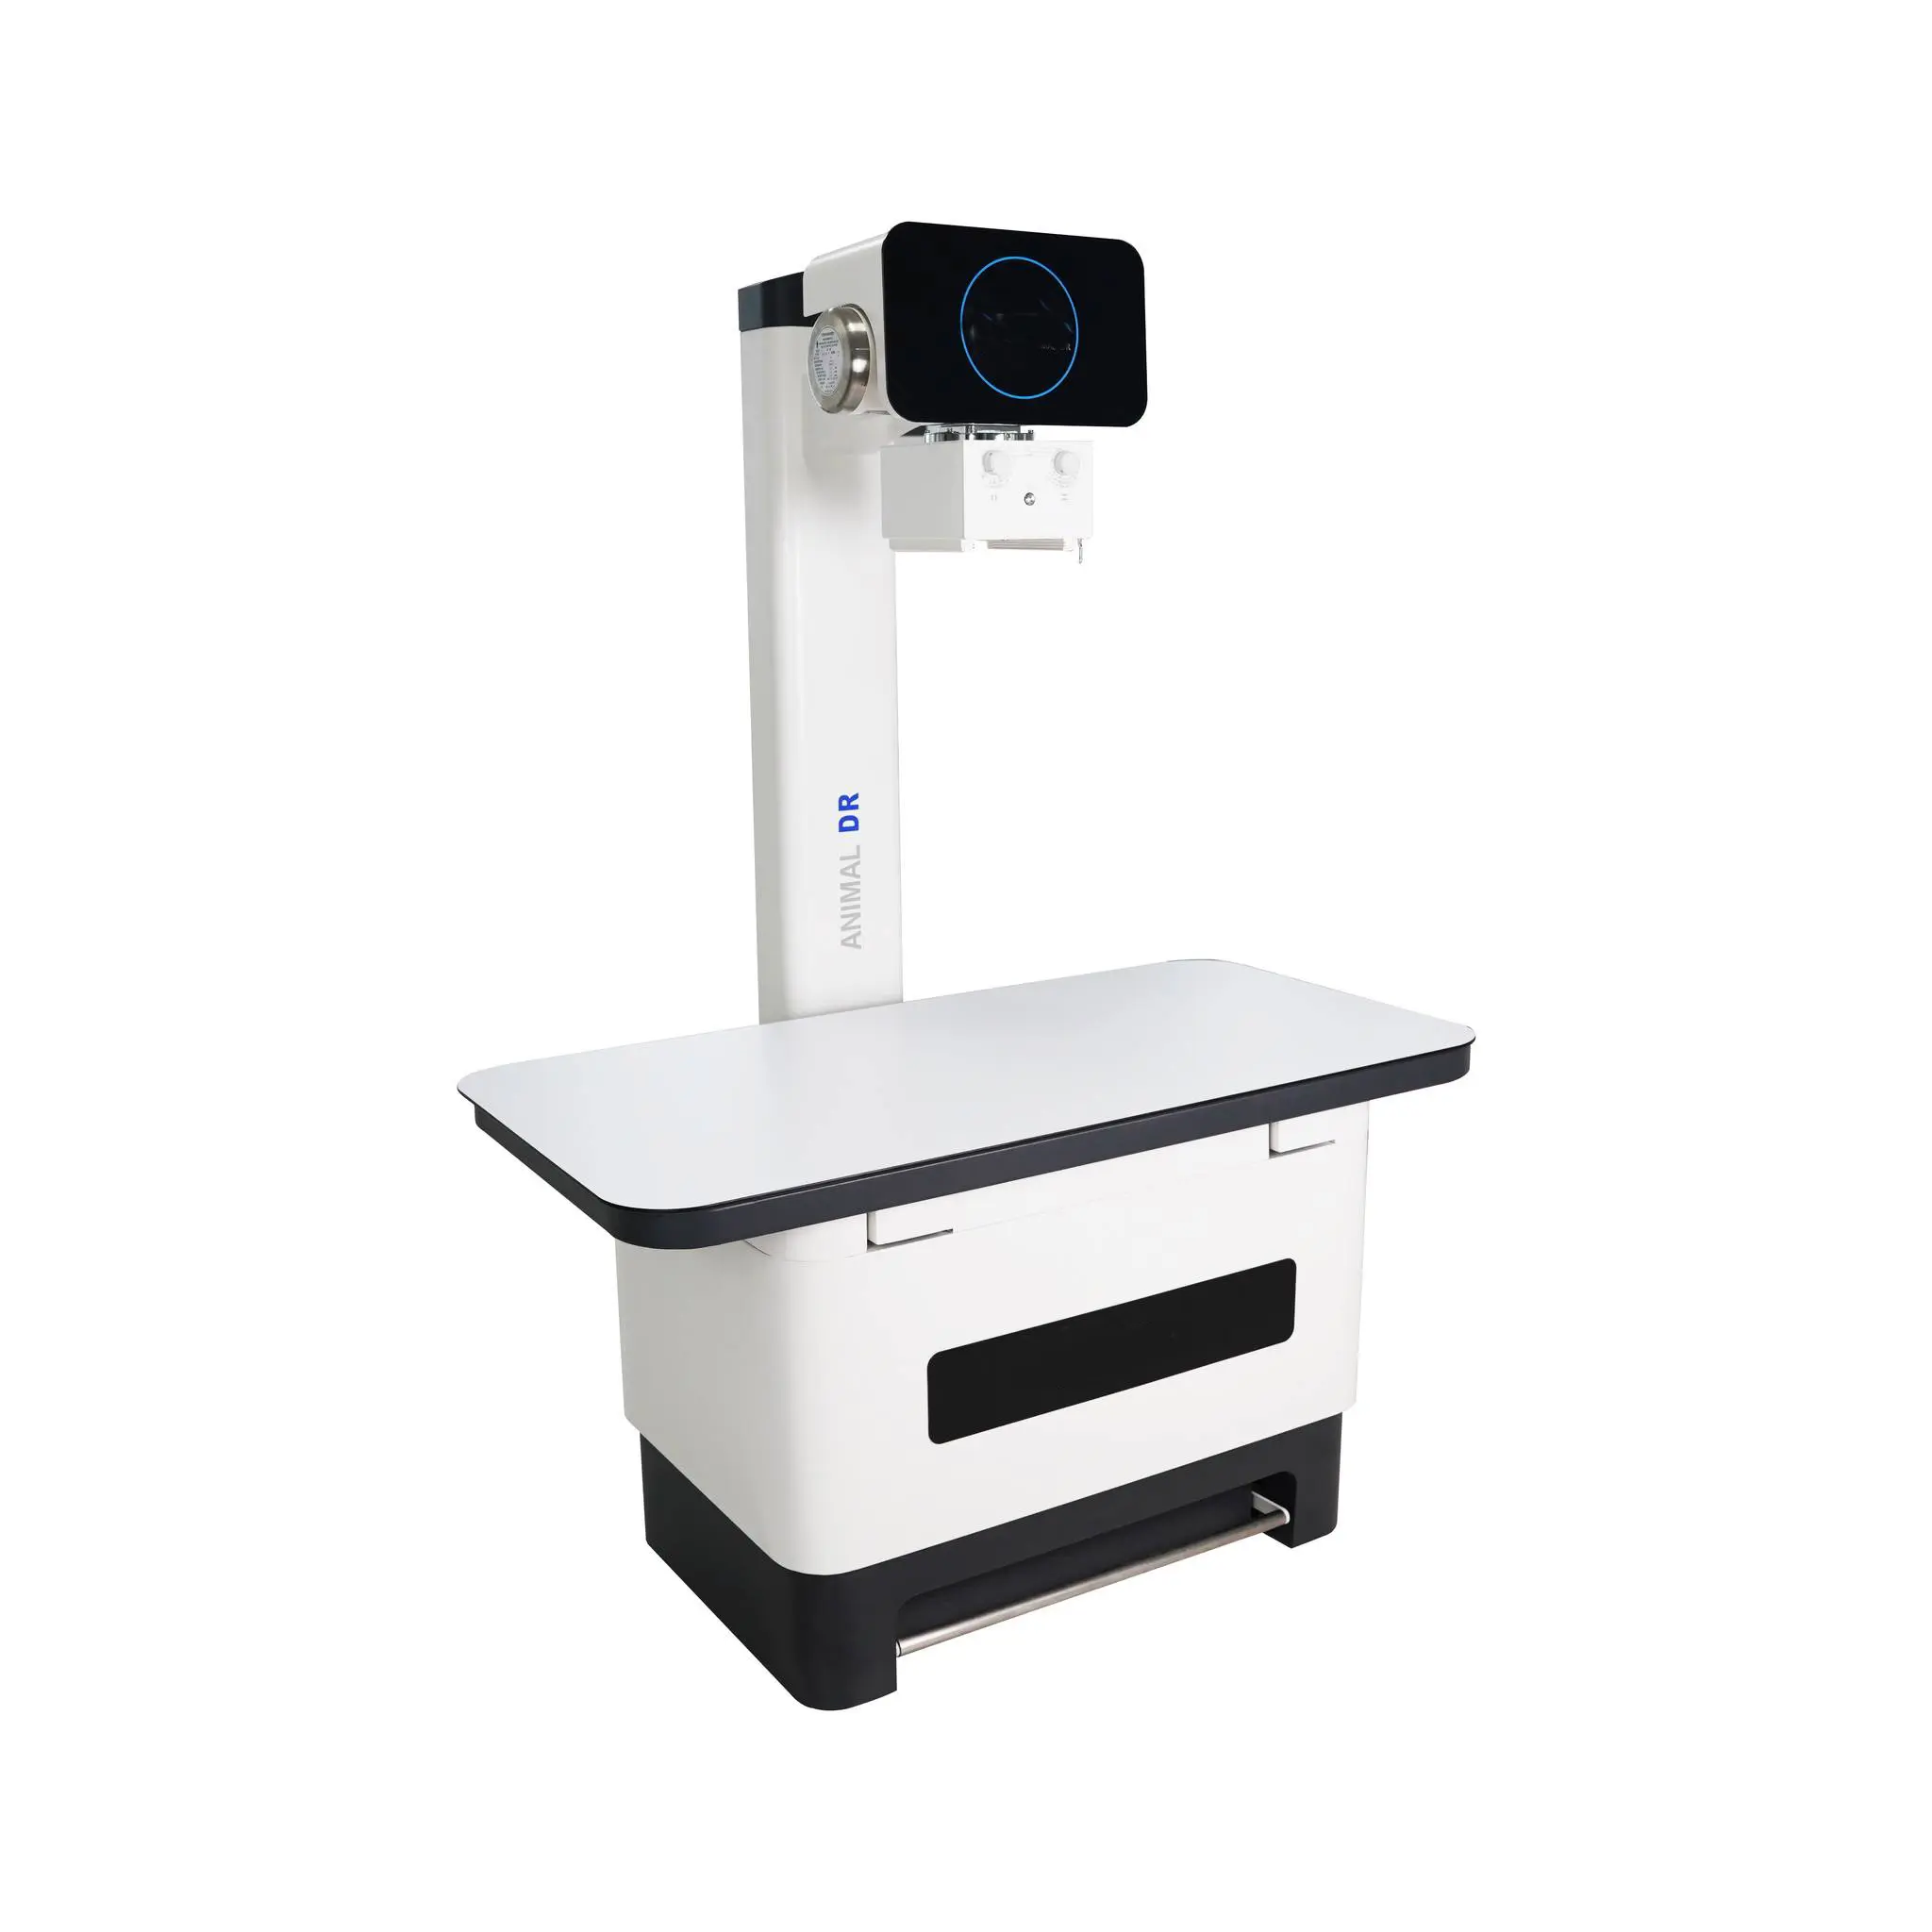 Vet Medical Xray System Hochfrequenz-Digital-Veterinär-Röntgengerät mit Flach bild detektor